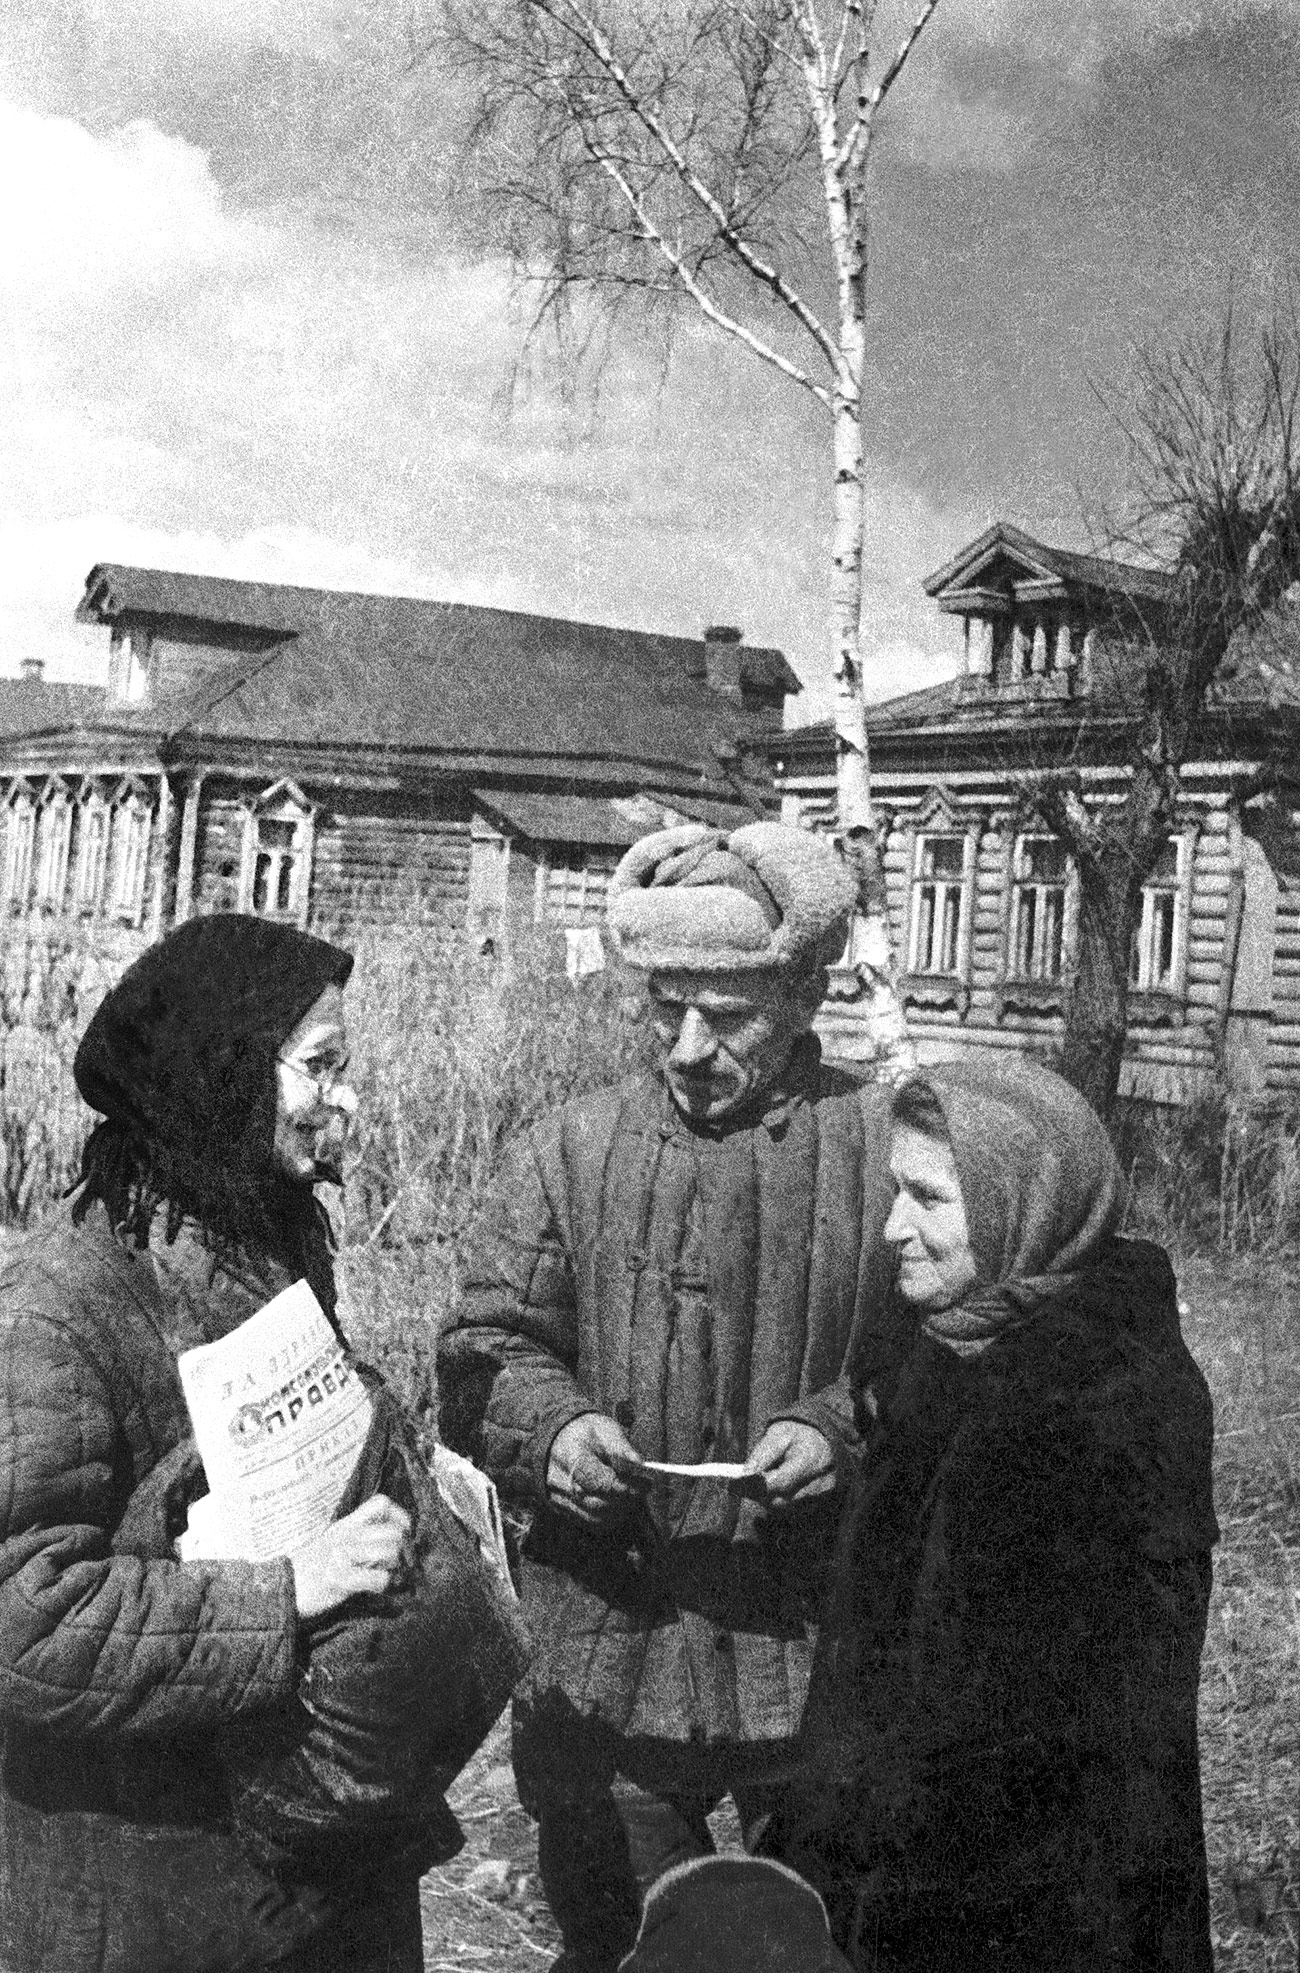 Многи рејони који се данас налазе близу центра Москве били су препуни дрвених кућа и личили су на село све до 1960-их. На фотографији је приказано некадашње село Вихино, сада рејон Москве.